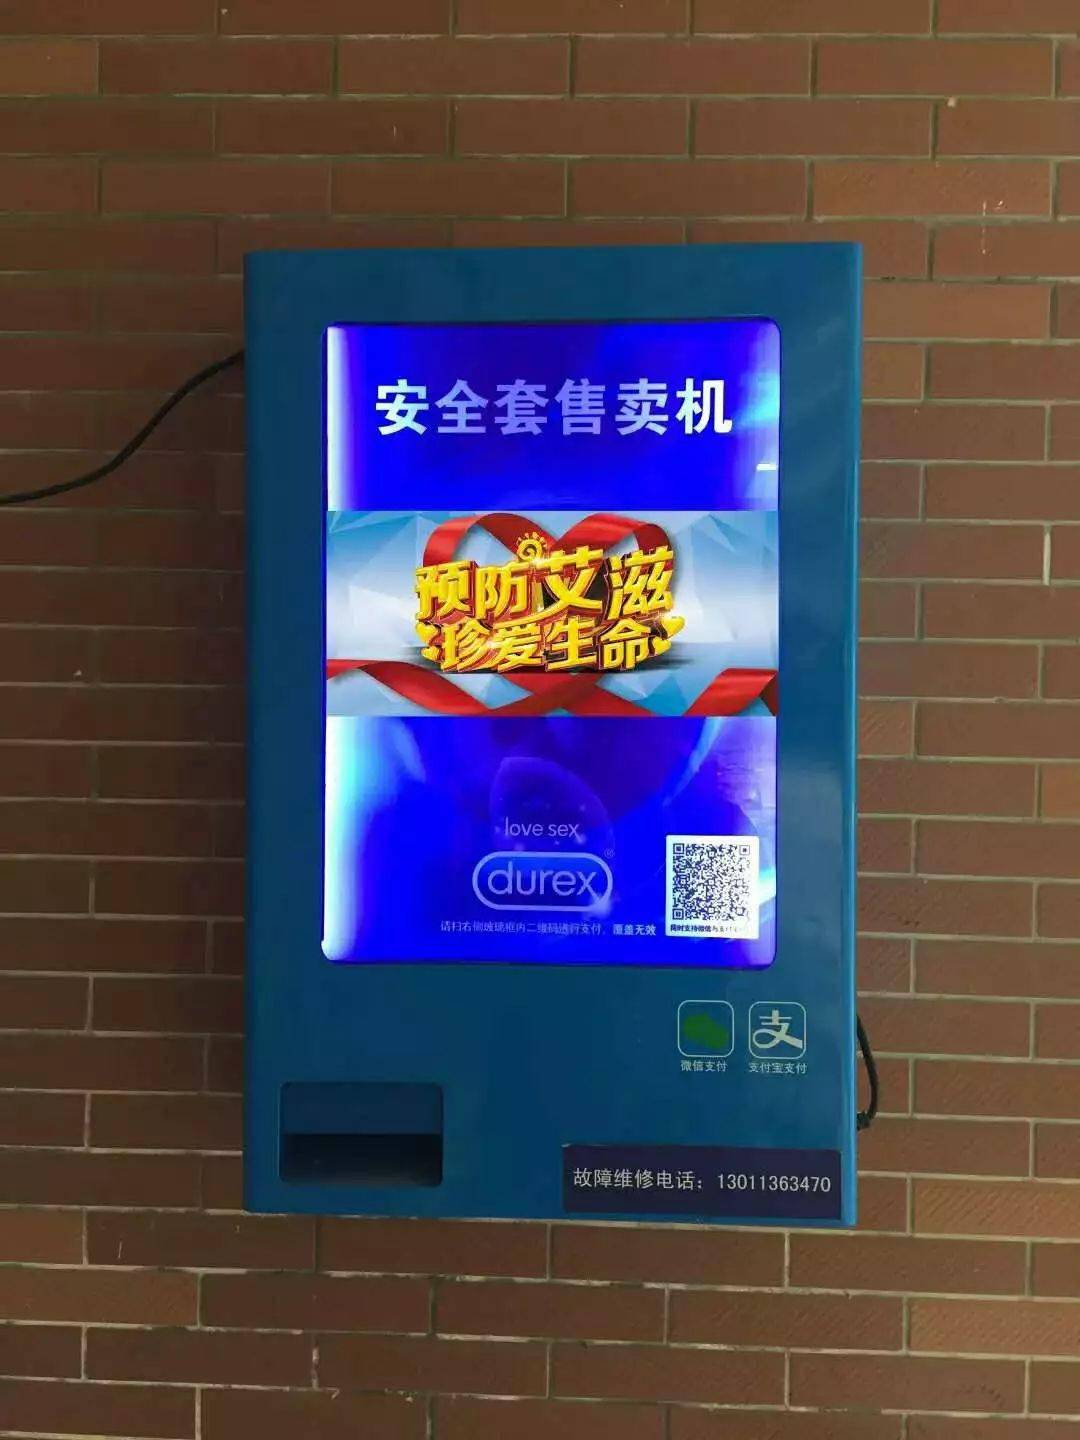 在惠州某高校宿舍楼也出现了免费避孕药具发放机